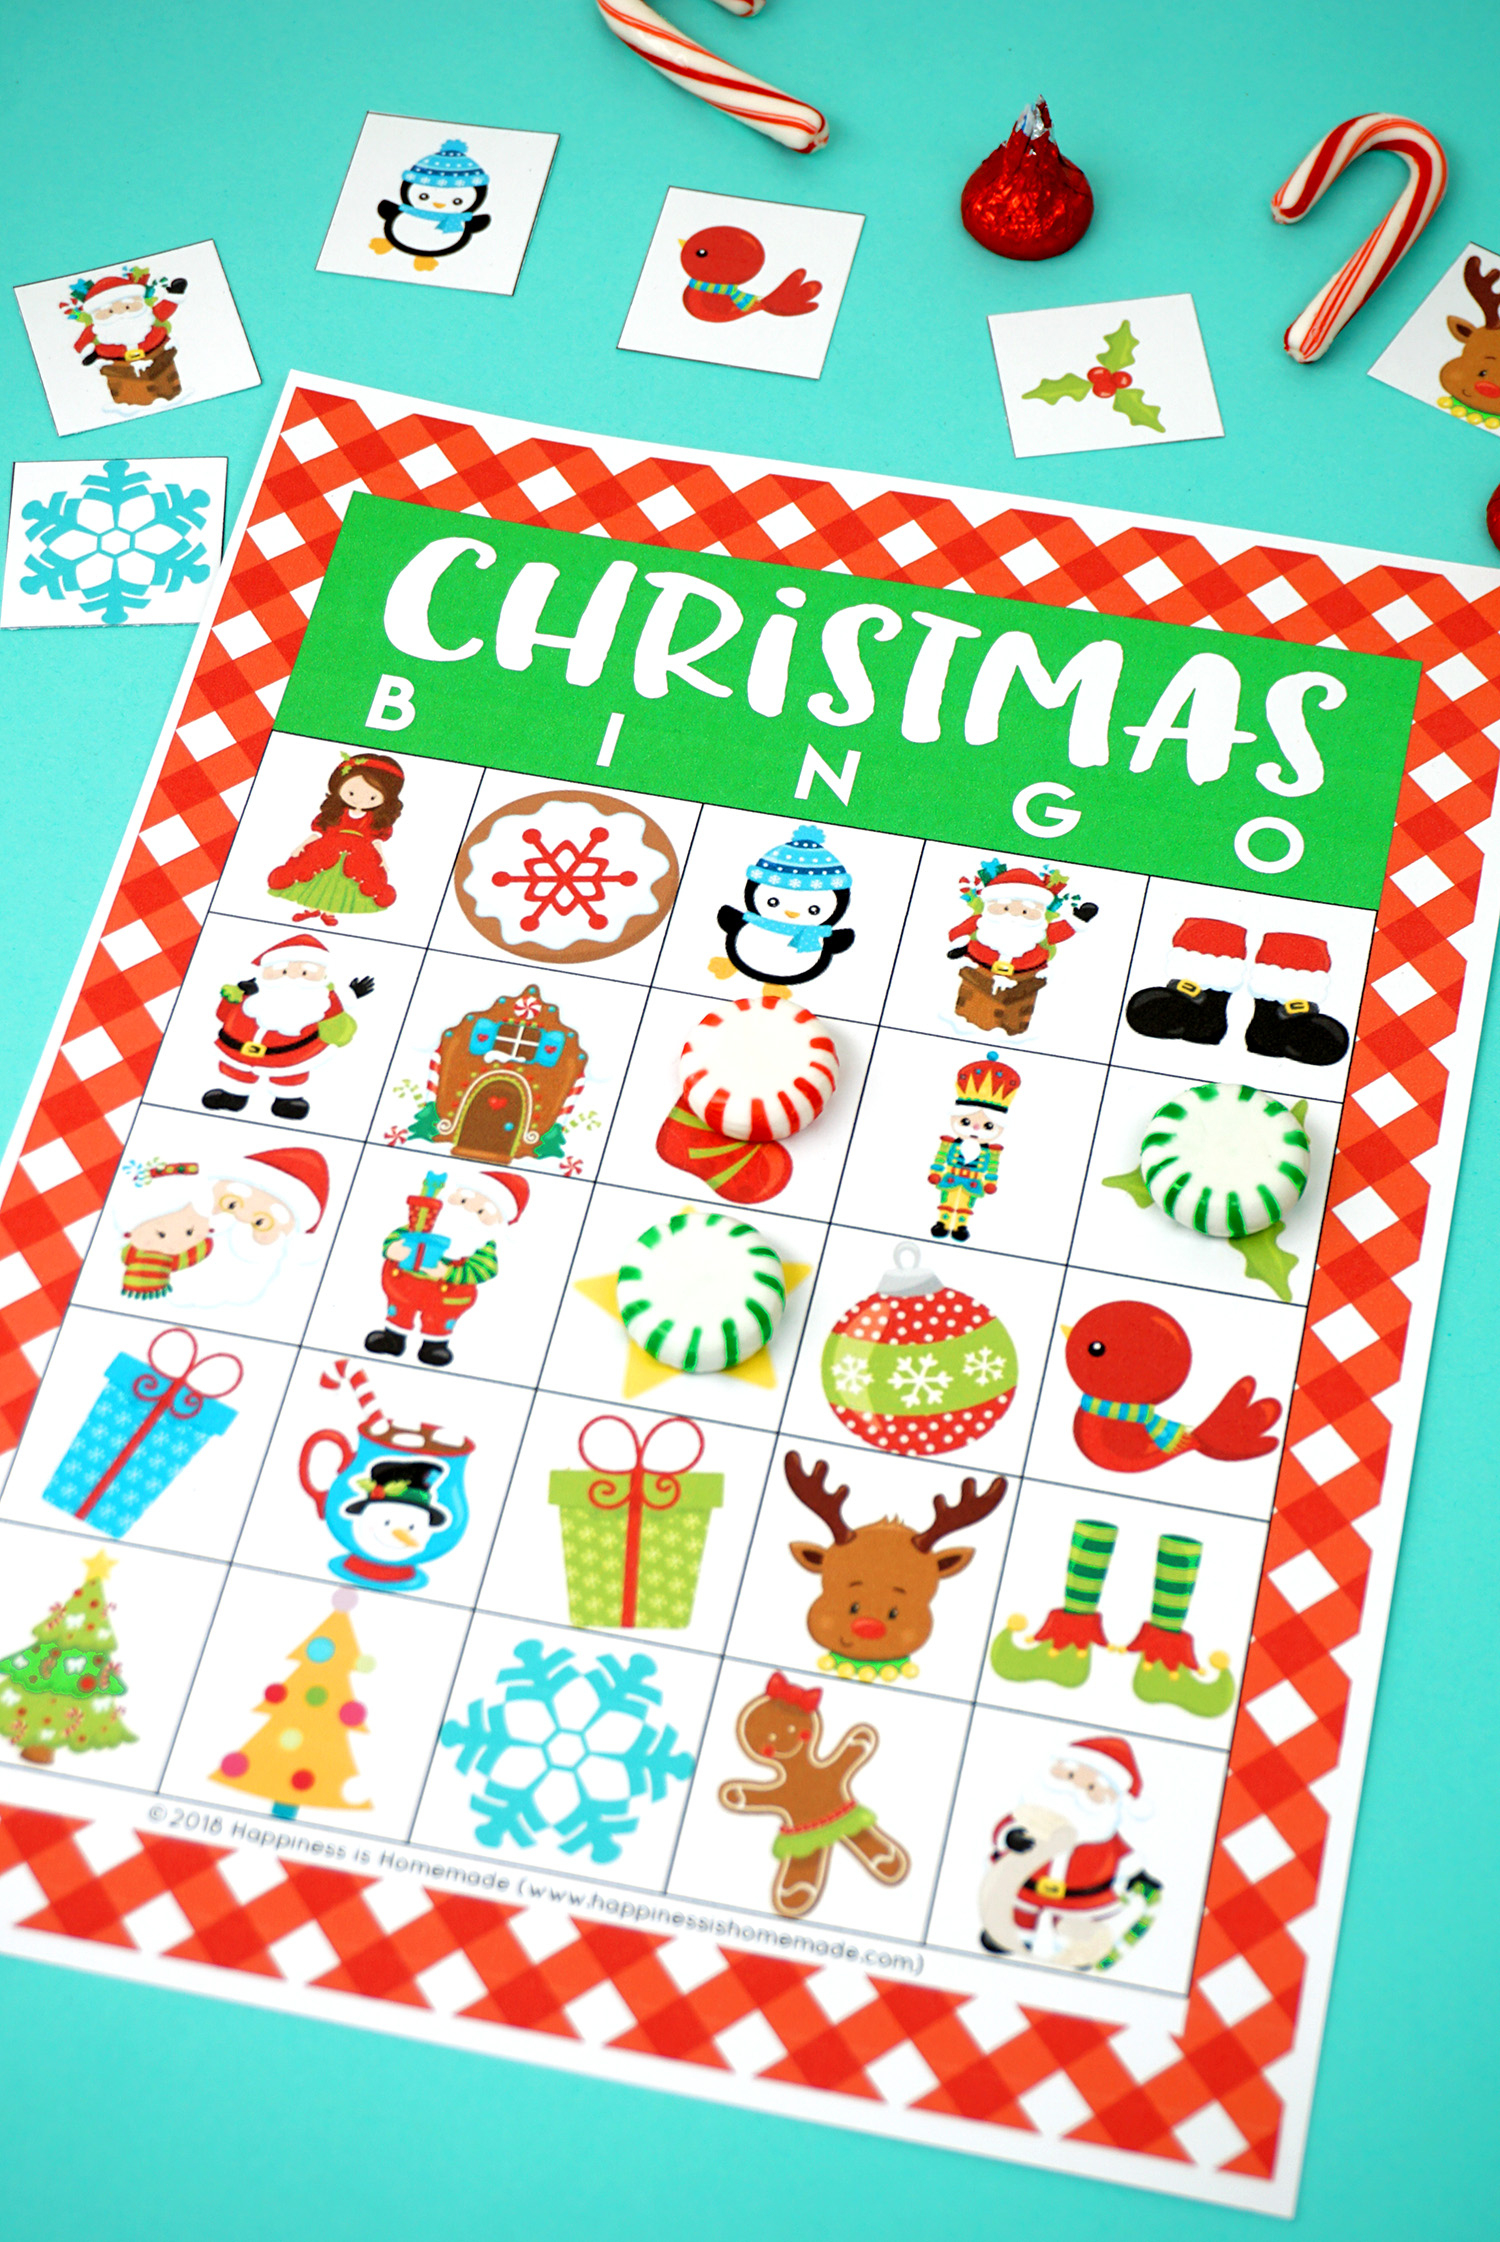 Printable Christmas Bingo Game - Happiness Is Homemade